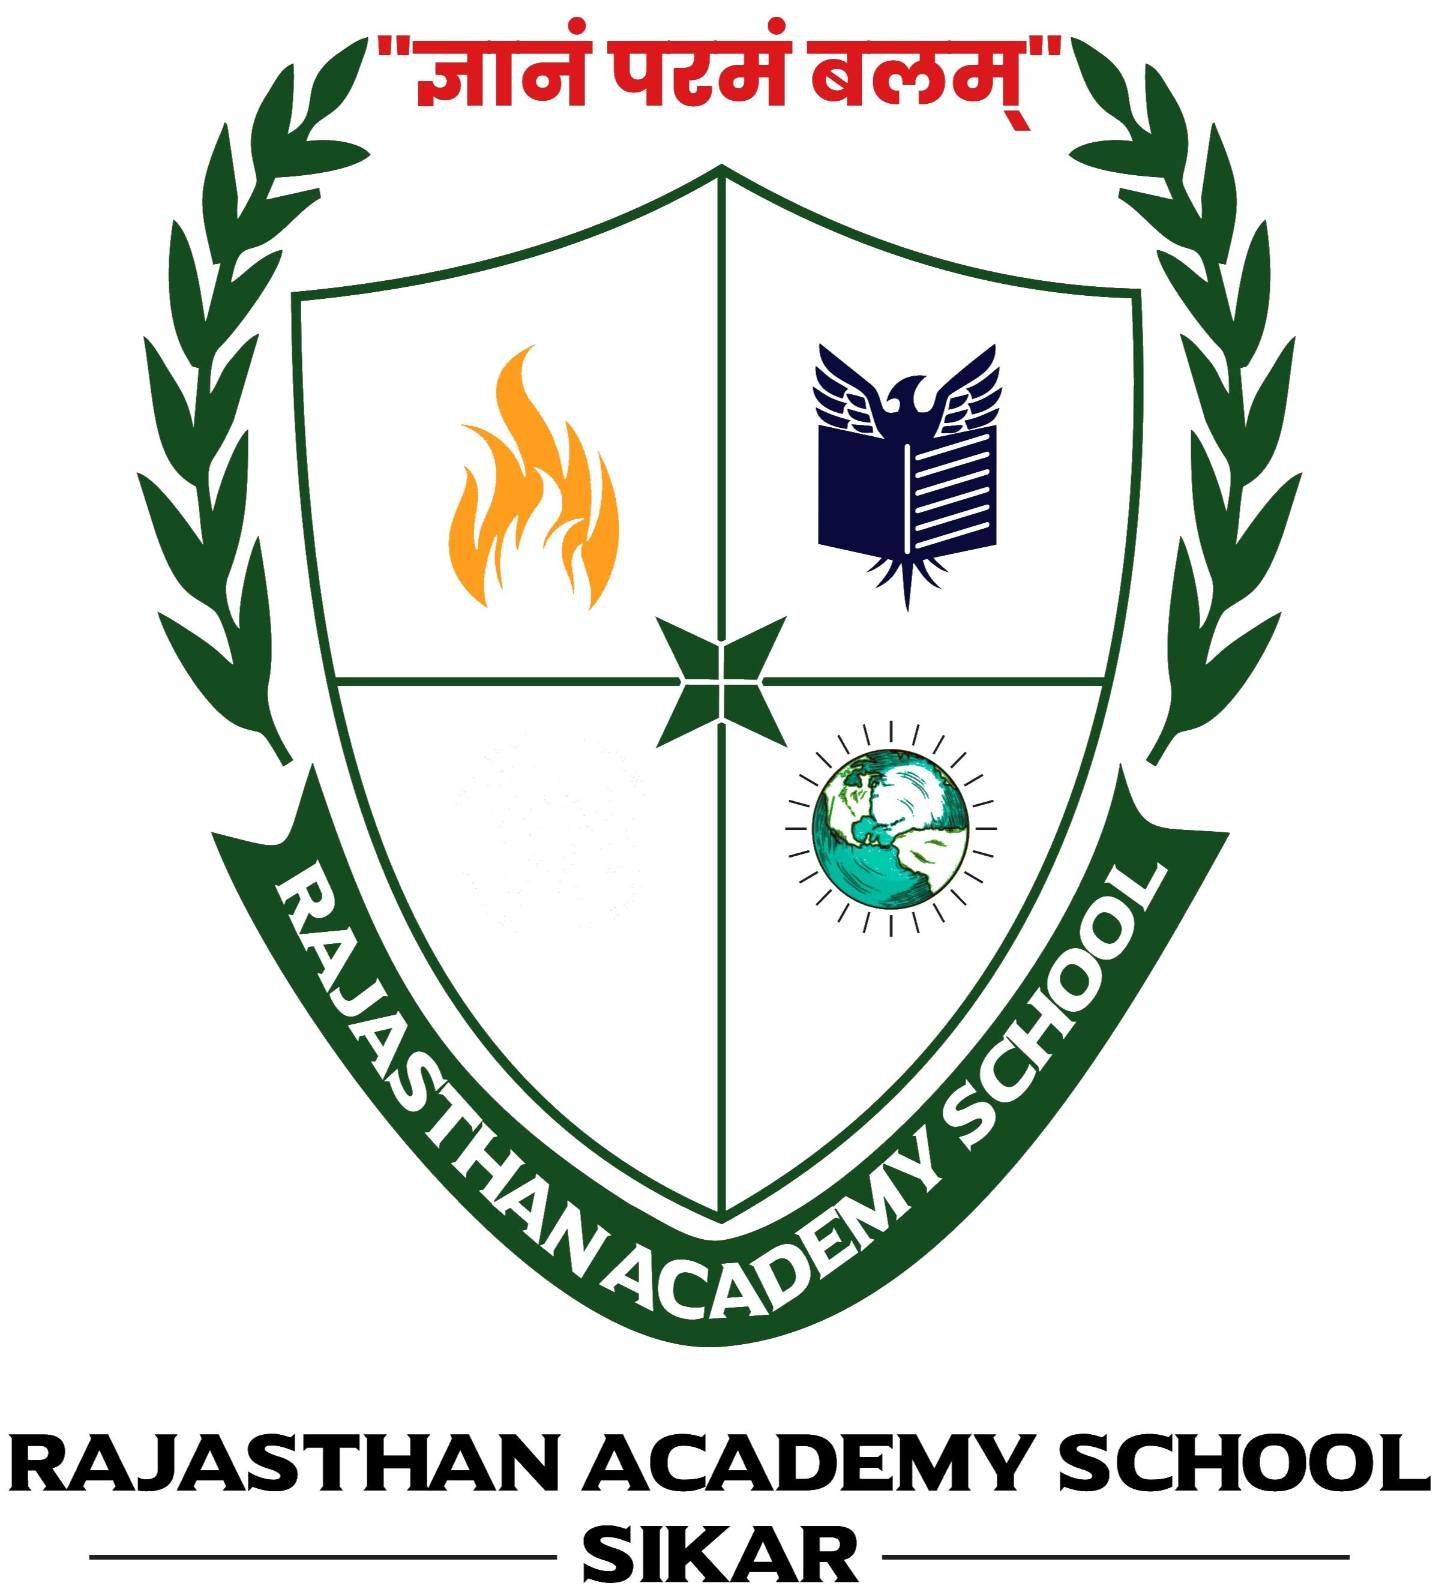 Rajasthan Academy School